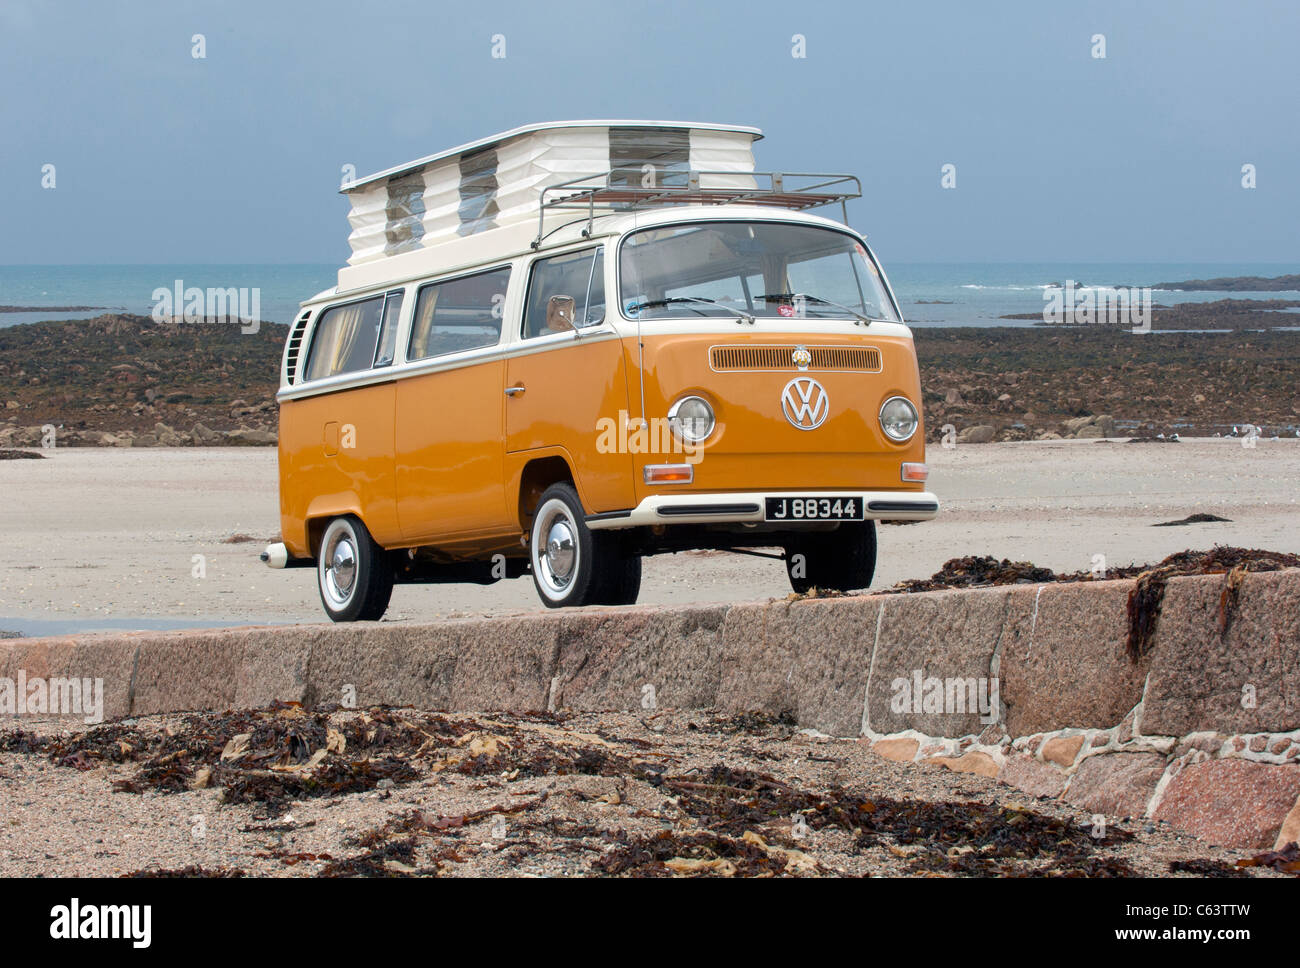 VW Volkswagen bay window Devon camper van classic raffreddato ad aria con propulsori posteriore van pop up tetto spiaggia sollevata arancione bianco Foto Stock